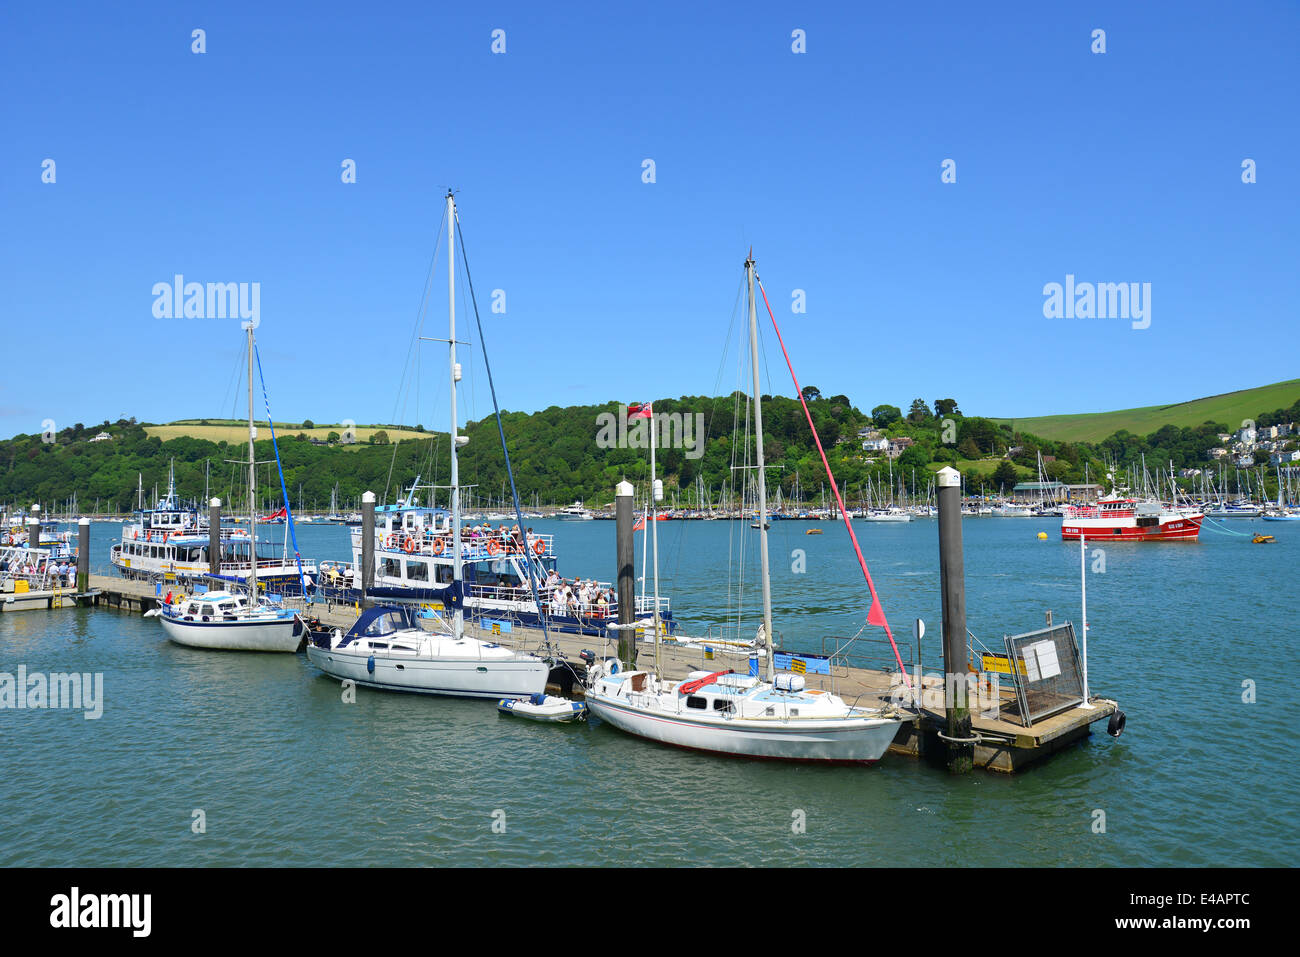 Bateau de croisière, le port de Dartmouth, Dartmouth, District de South Hams, Devon, Angleterre, Royaume-Uni Banque D'Images